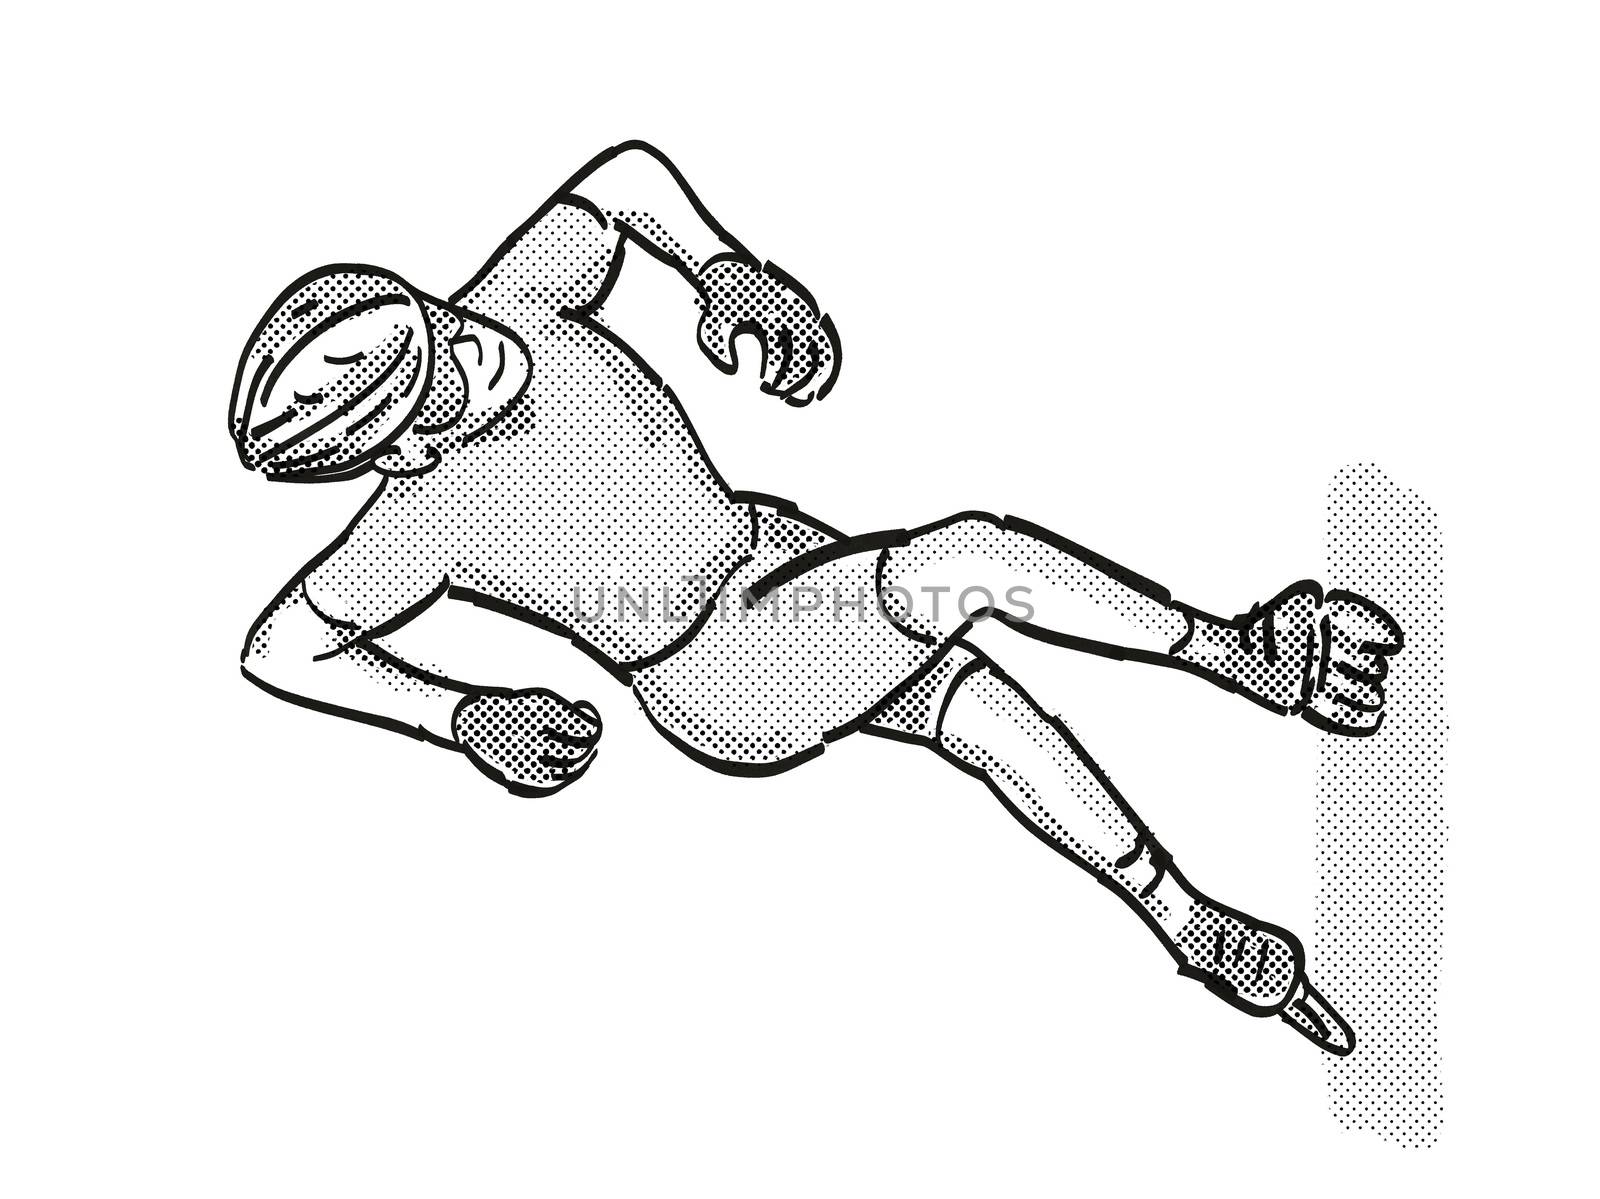 athlete skater inline speed skating Cartoon Retro Drawing by patrimonio